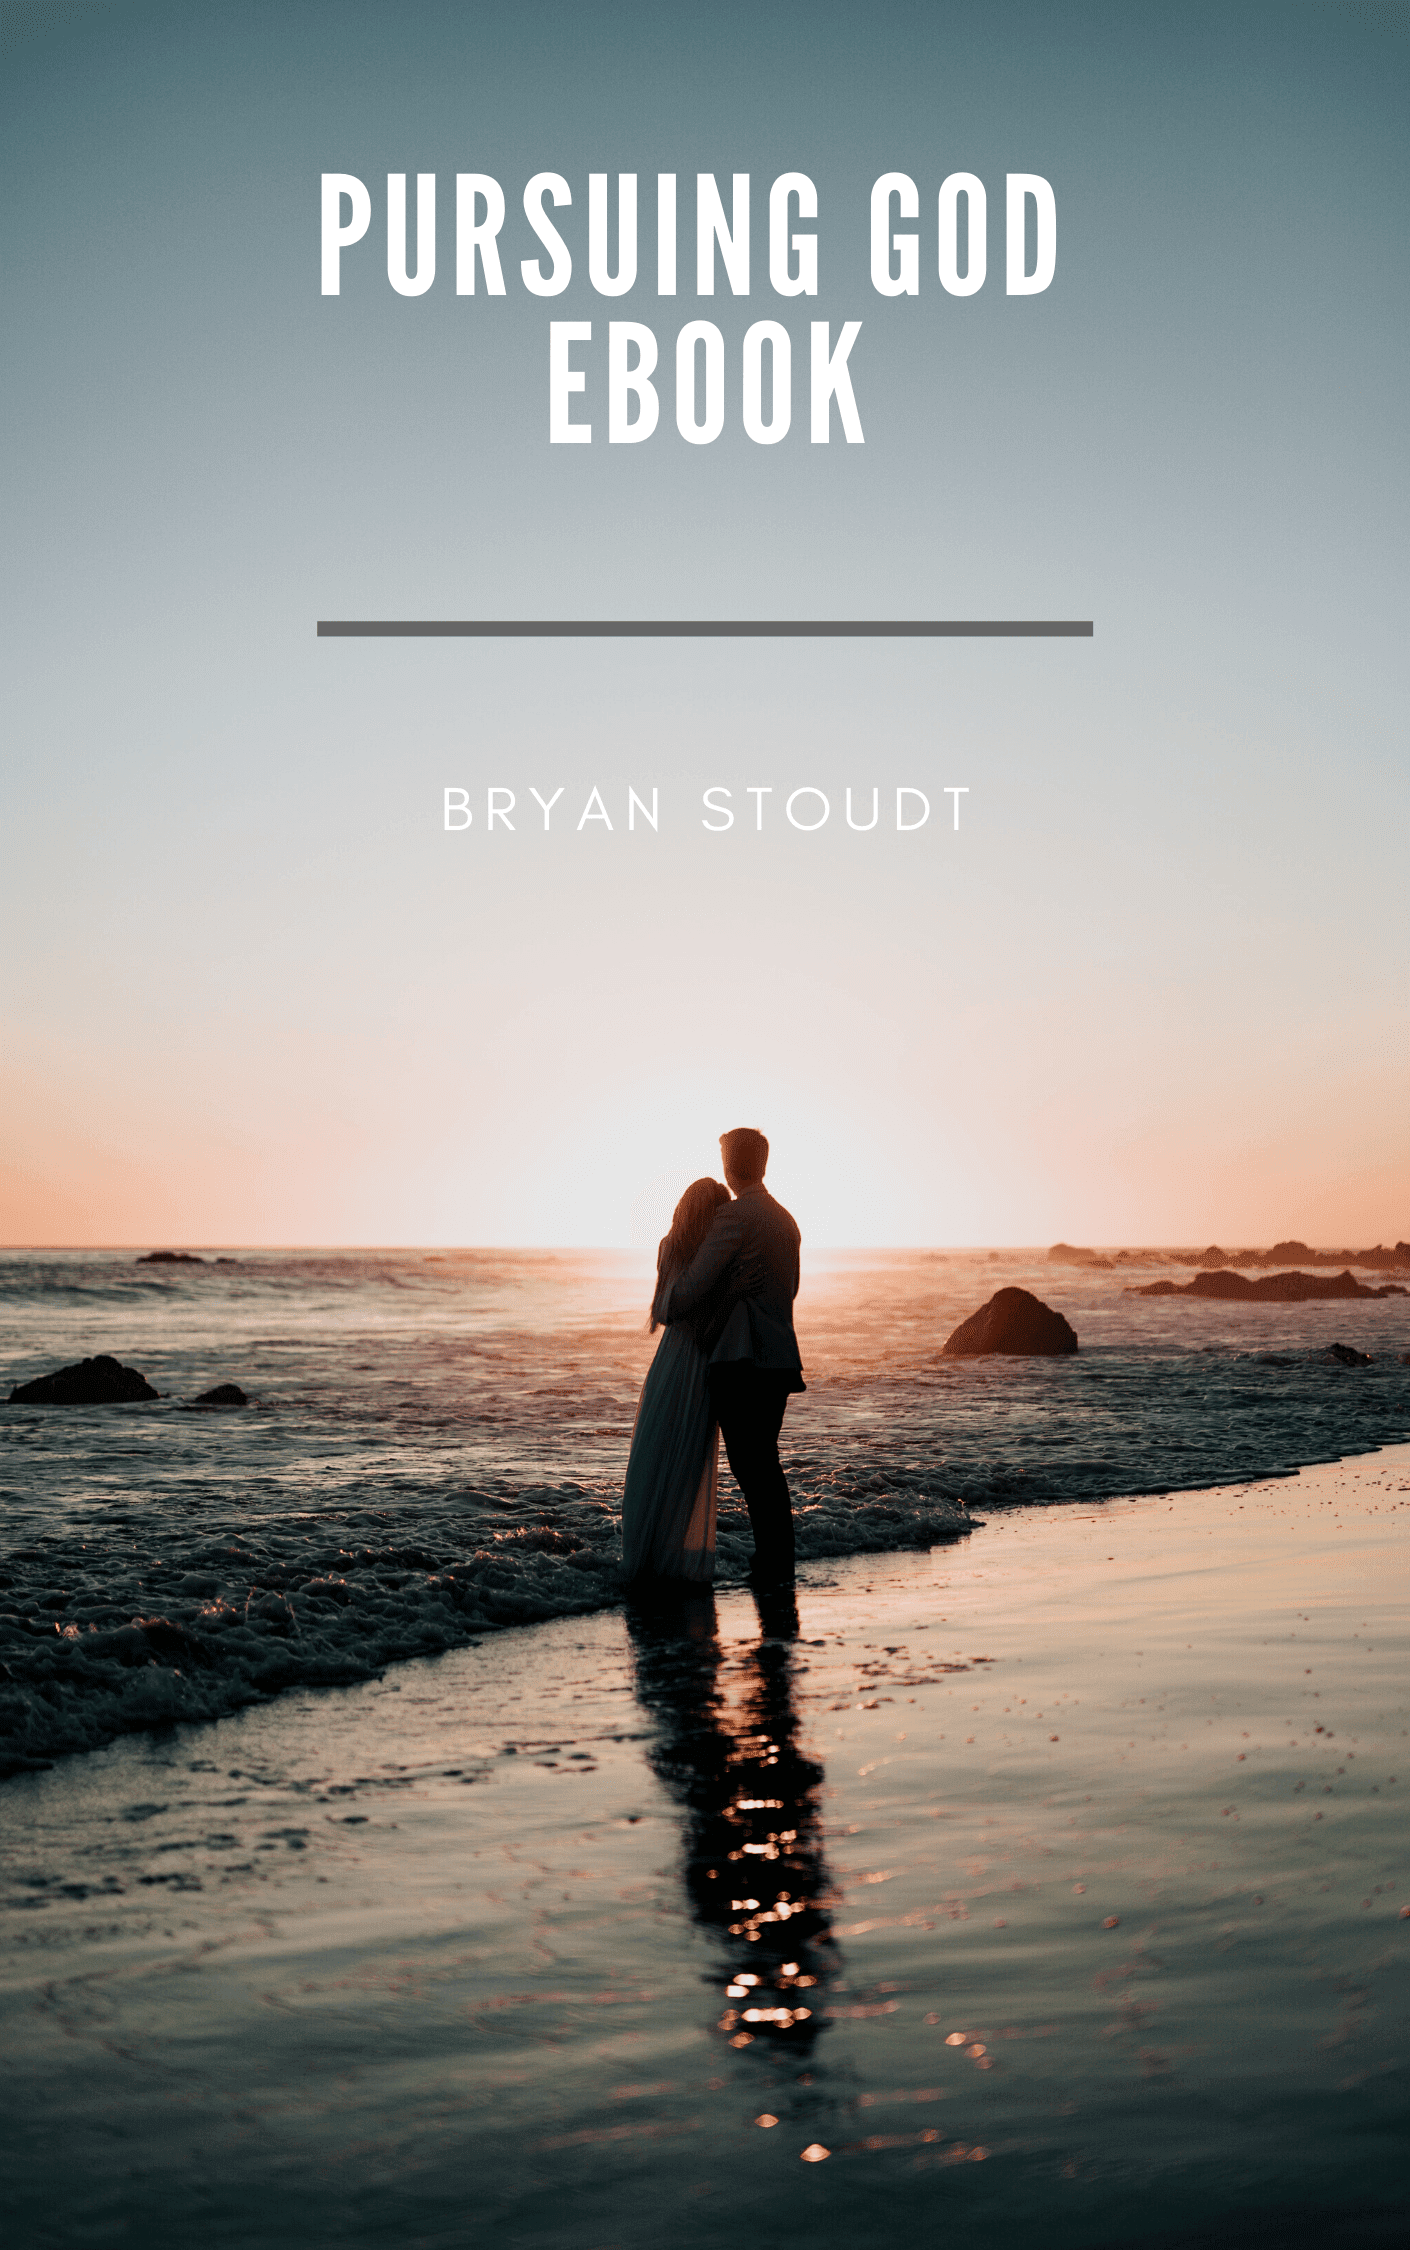 Pursuing God ebook Bryan Stoudt cover